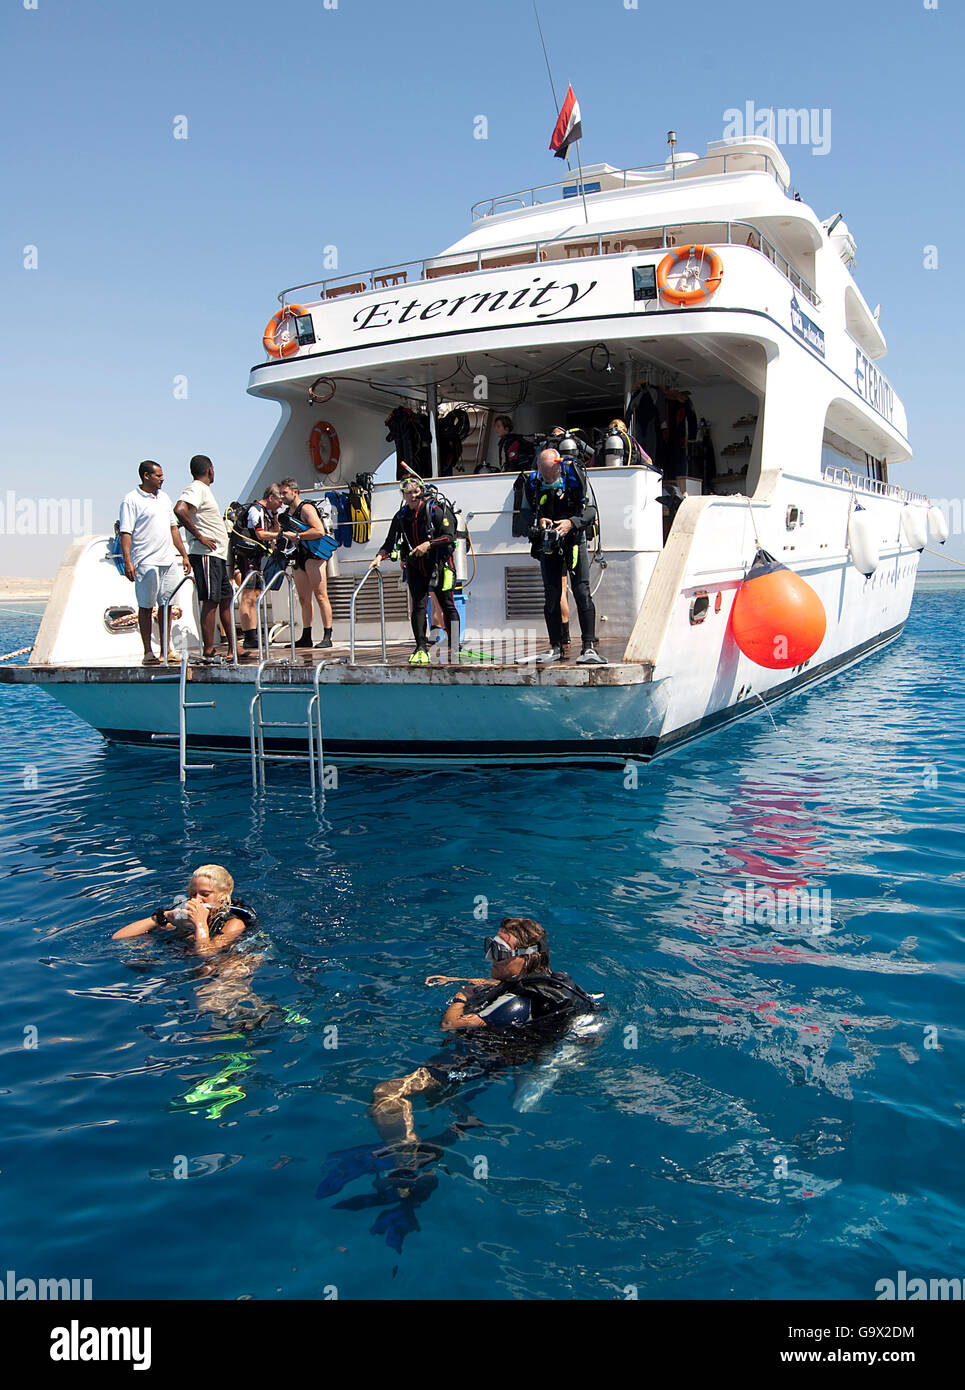 Bateau de plongée, plongeur ou deux dans l'eau, plate-forme de plongée, plongée sous marine, l'Égypte, l'Afrique, Mer Rouge Banque D'Images